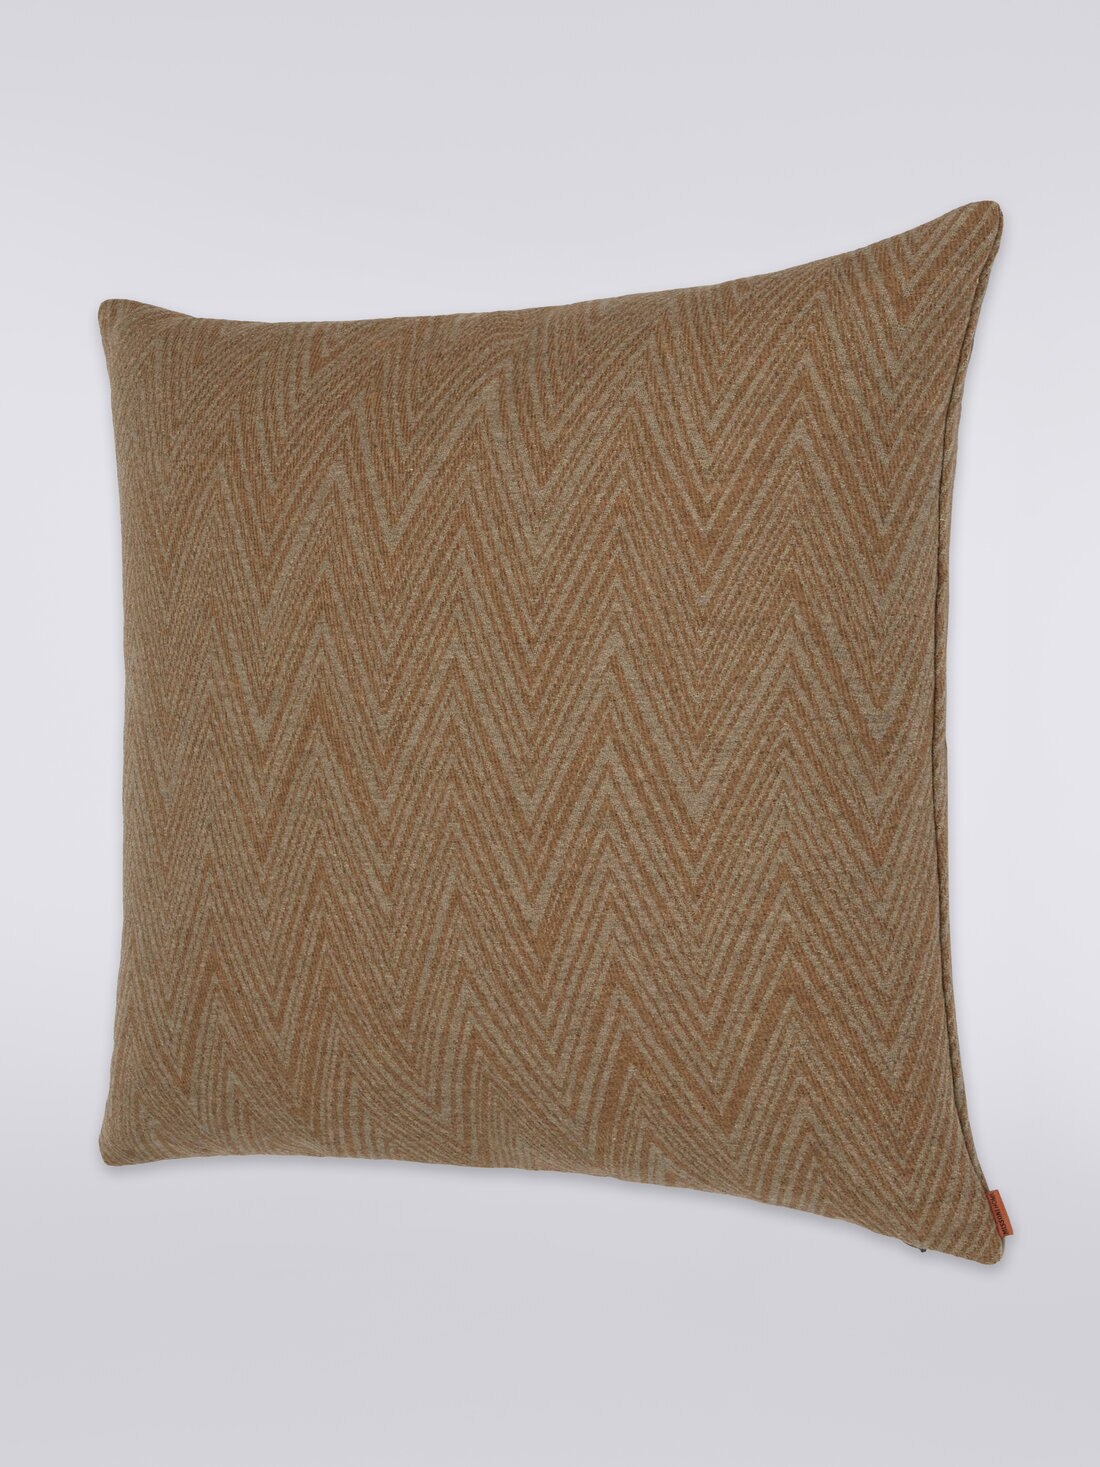 Bridgetown cushion 60x60 cm, Multicoloured  - 8051275582144 - 1